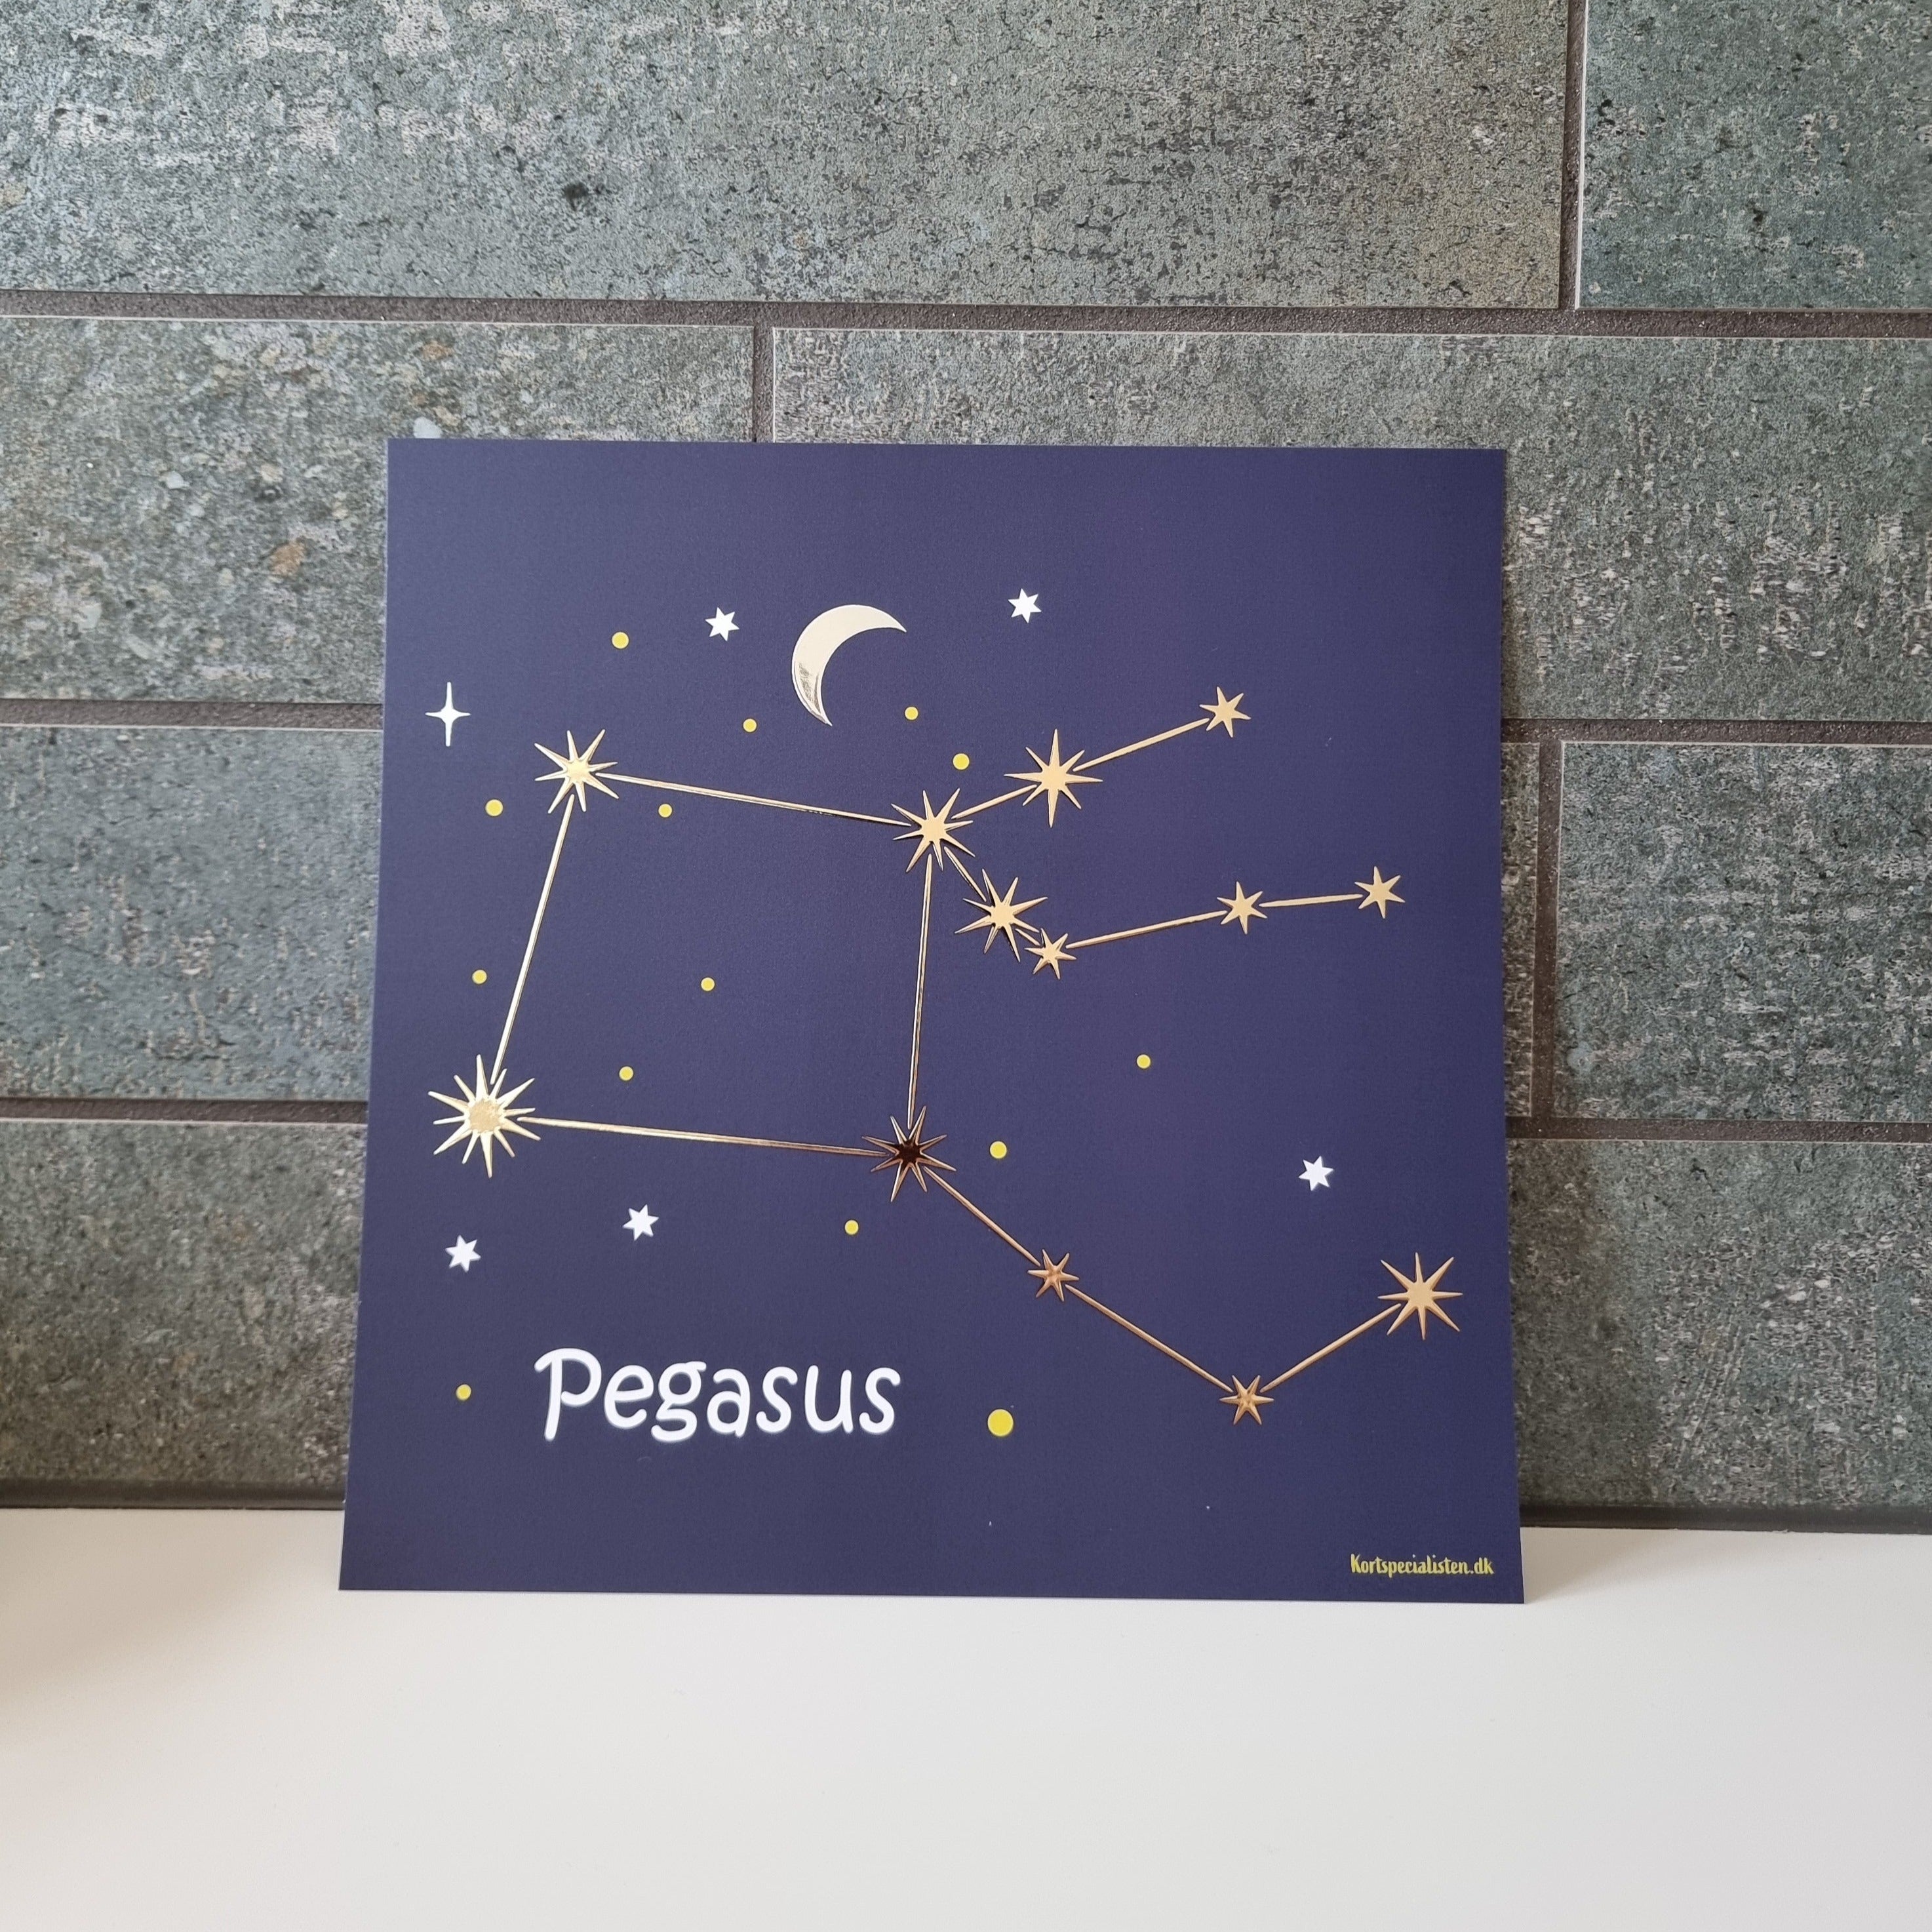 Stjernebillede - Pegasus